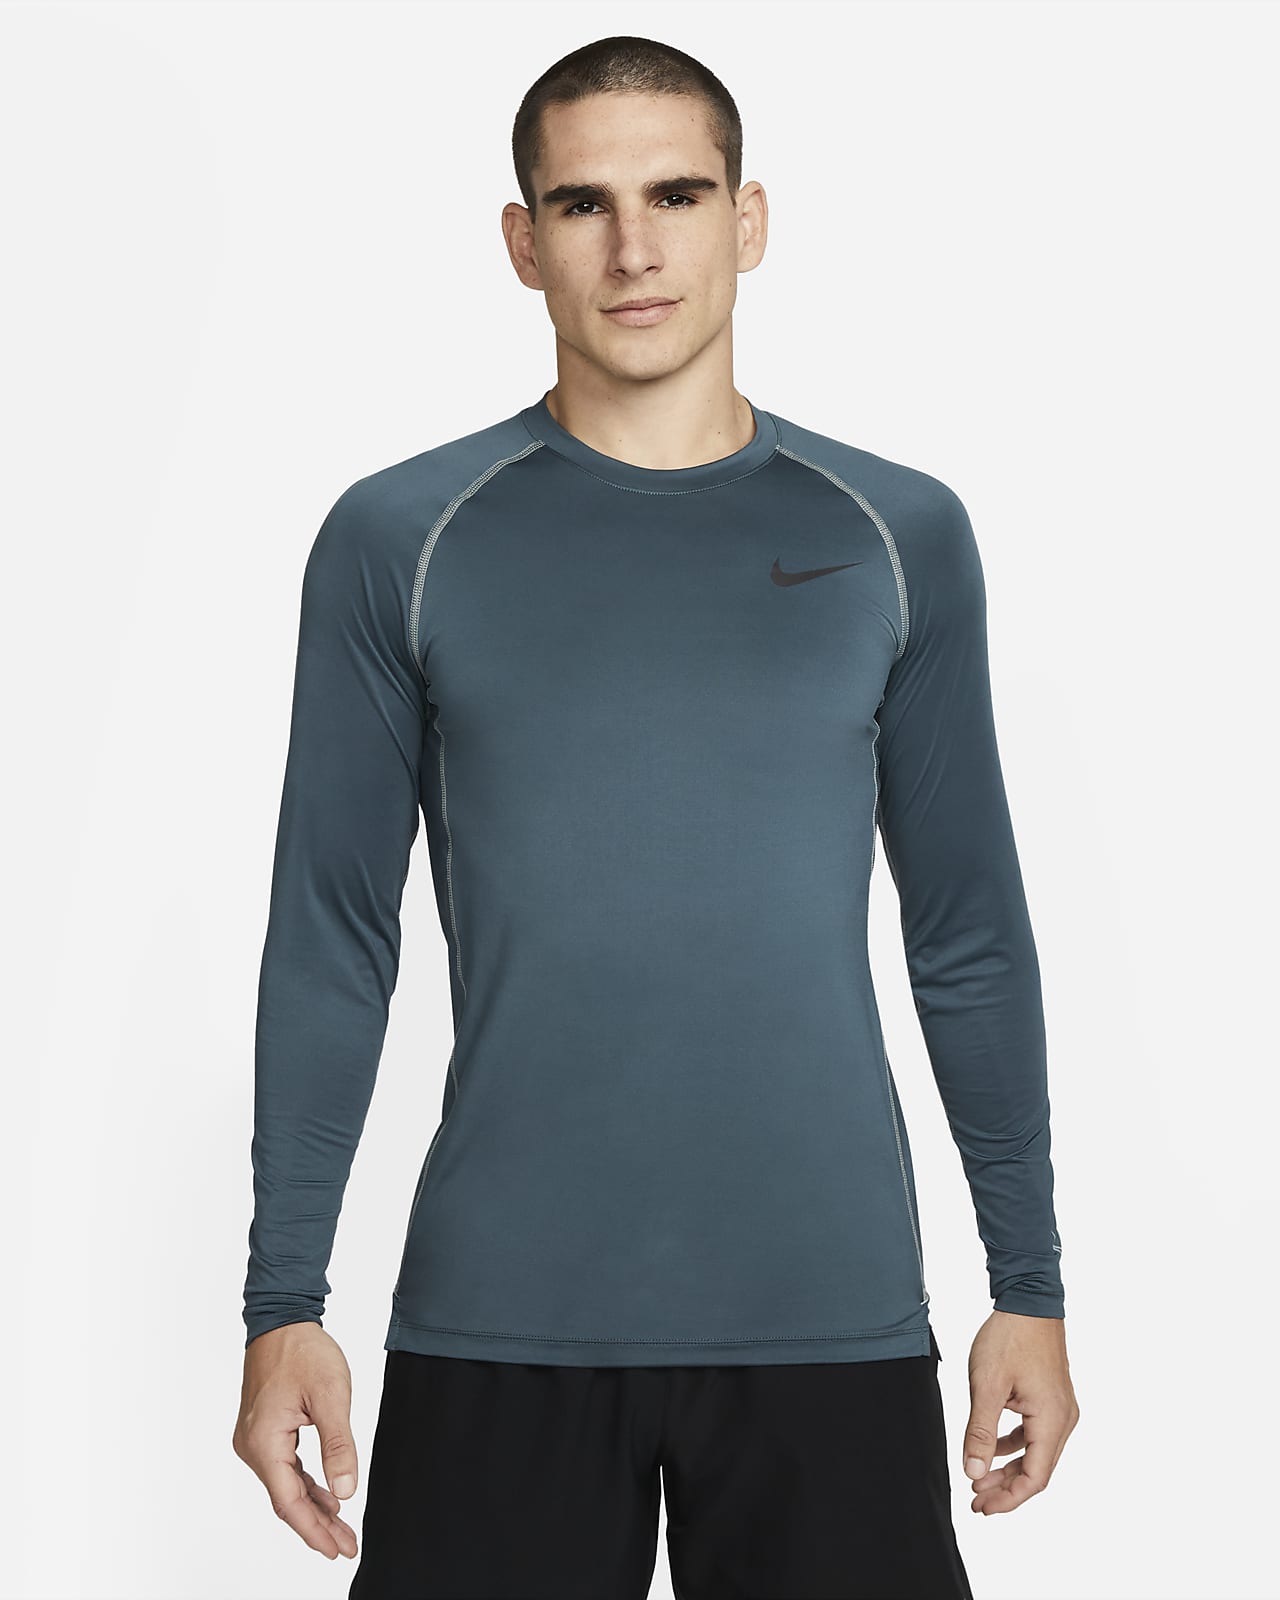 alcanzar Enriquecer Interpretar Camiseta de manga larga y ajuste entallado para hombre Nike Pro Dri-FIT.  Nike.com